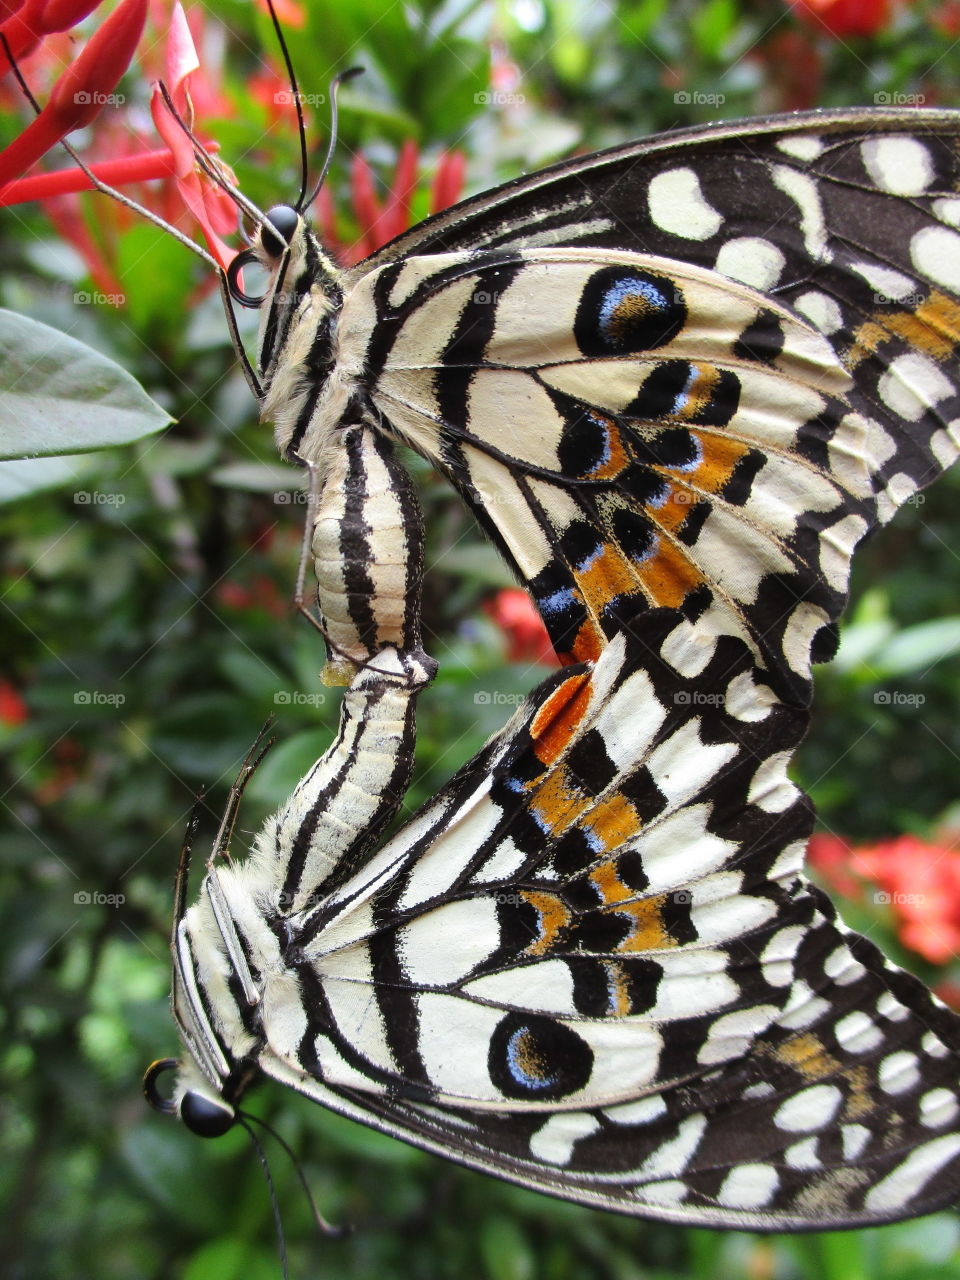 butterfly art